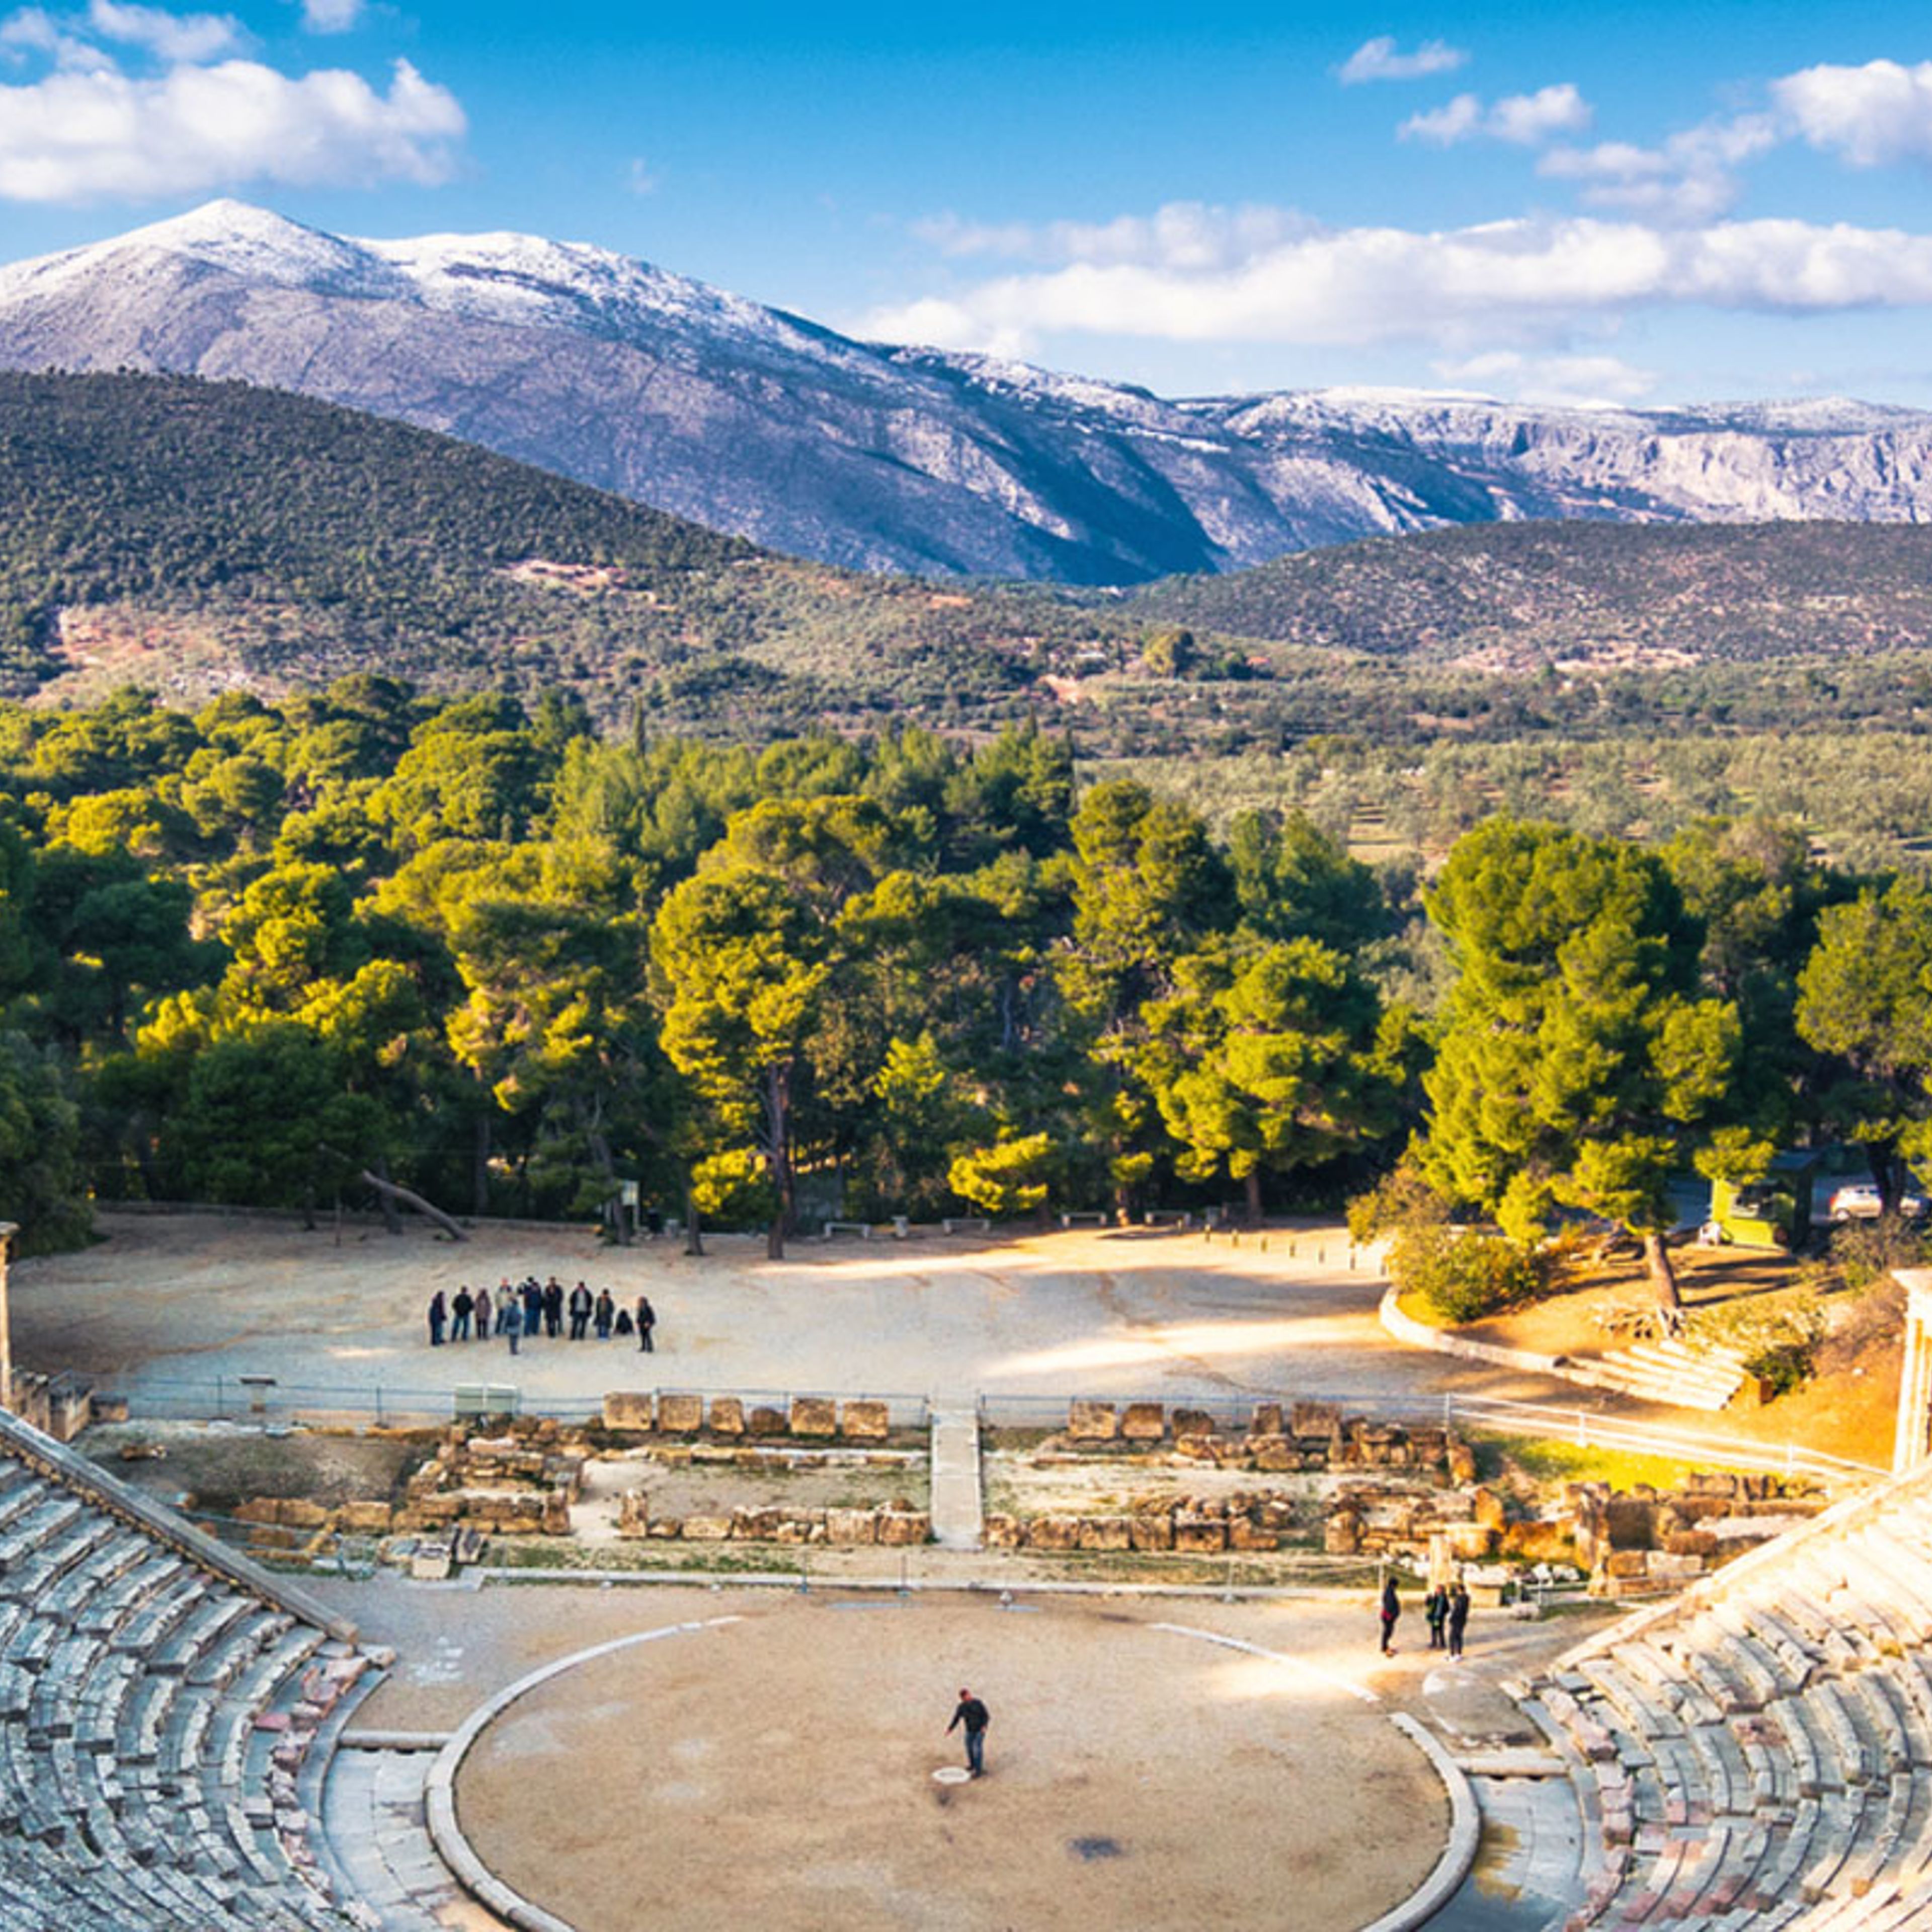 El antiguo teatro de Epidauro (o "Epidauro")